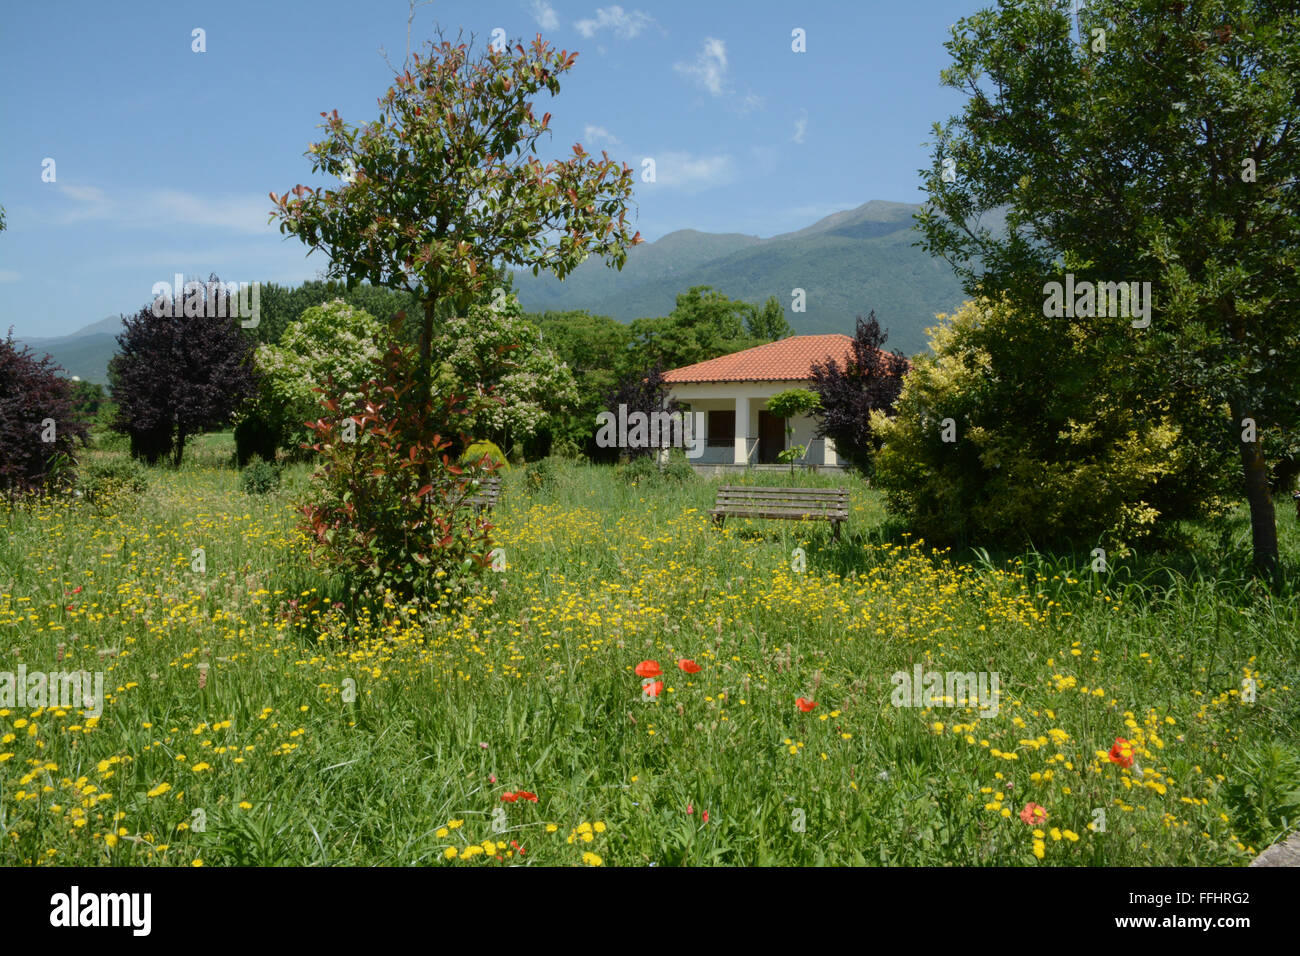 Paysage grec coloré avec prairie de fleurs sauvages, maison blanche, montagnes et ciel bleu Banque D'Images